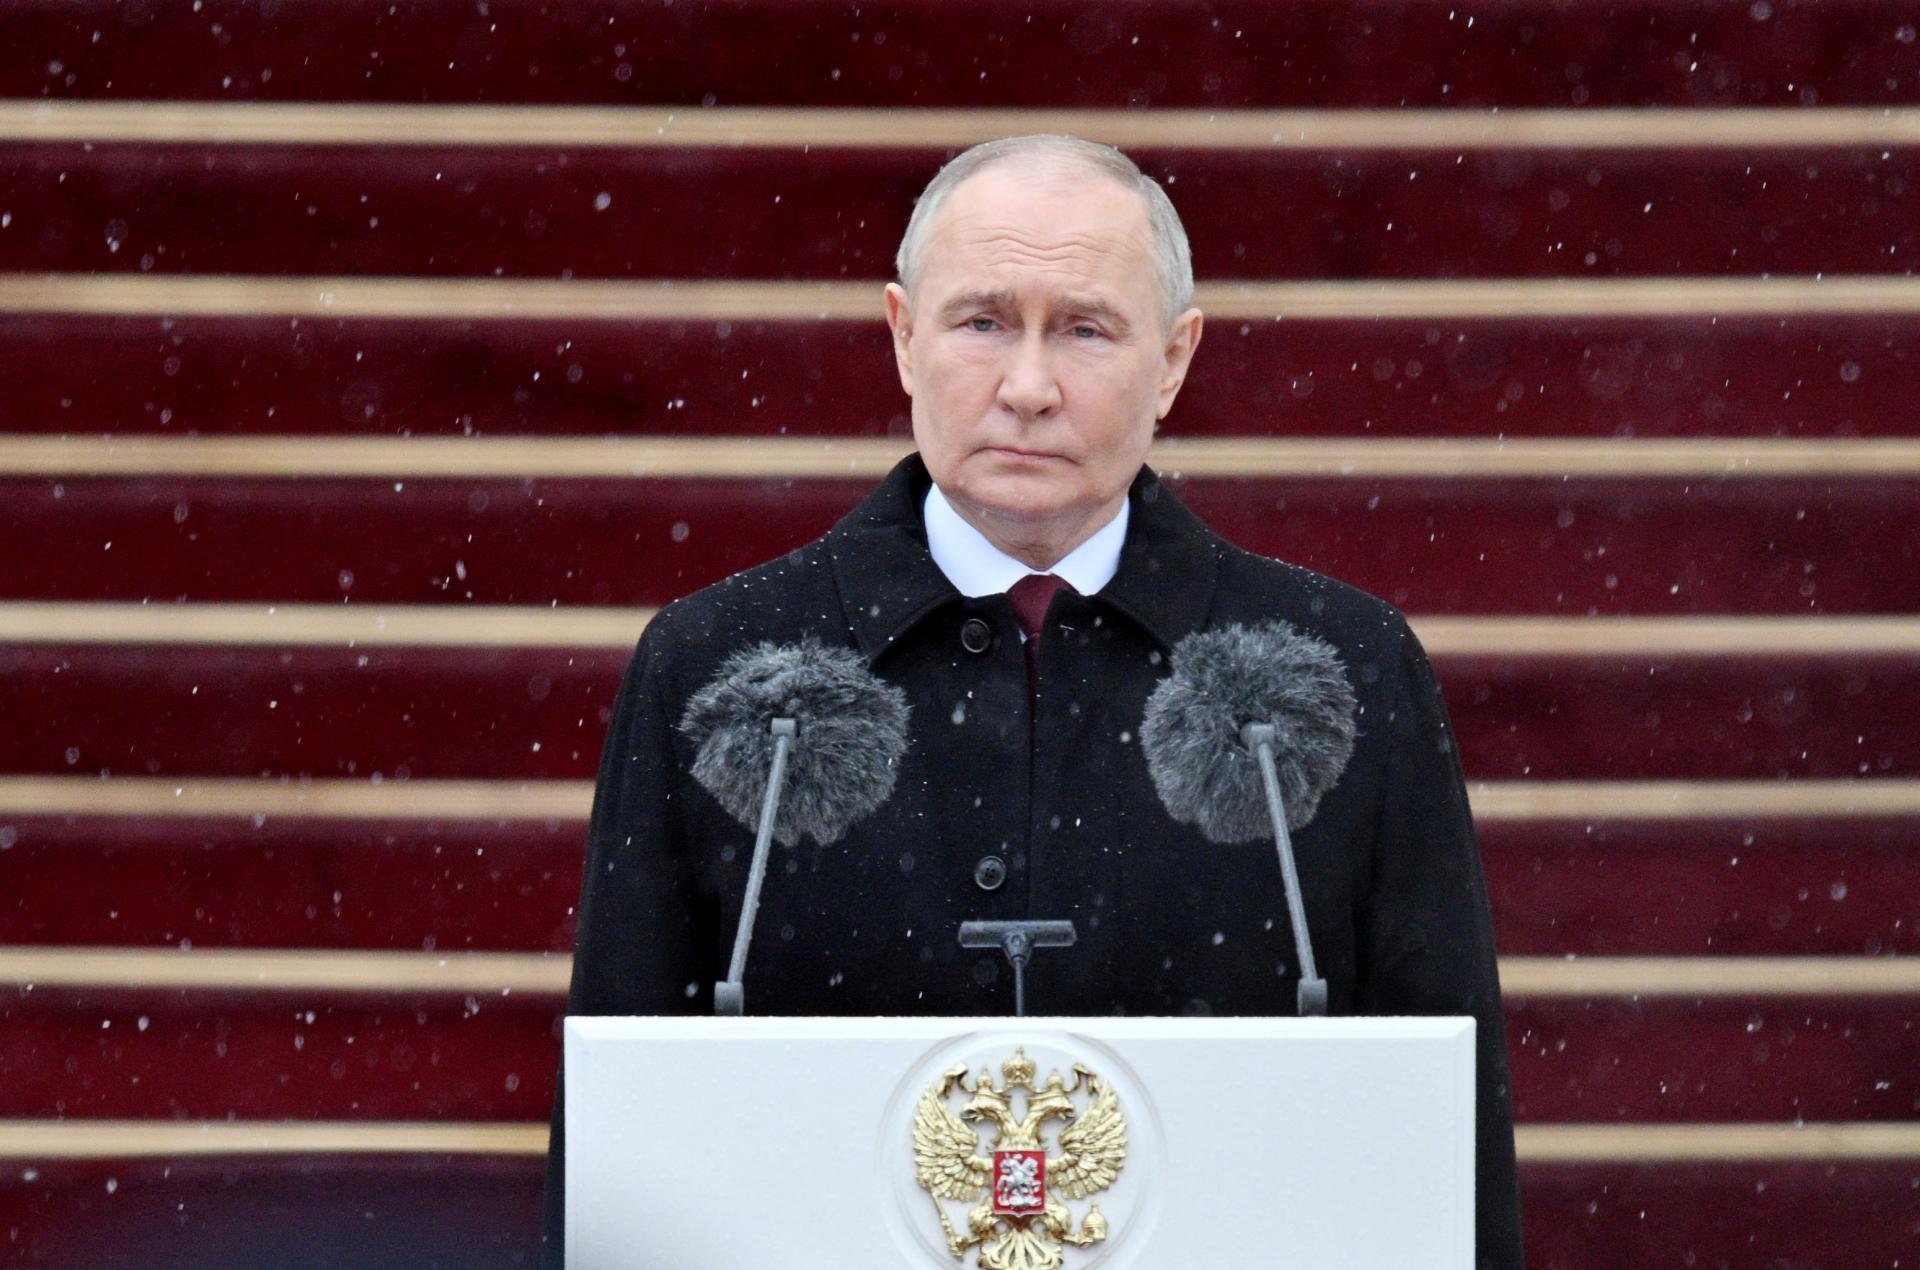 Čína zablahoželala Putinovi k inaugurácii do prezidentského úradu